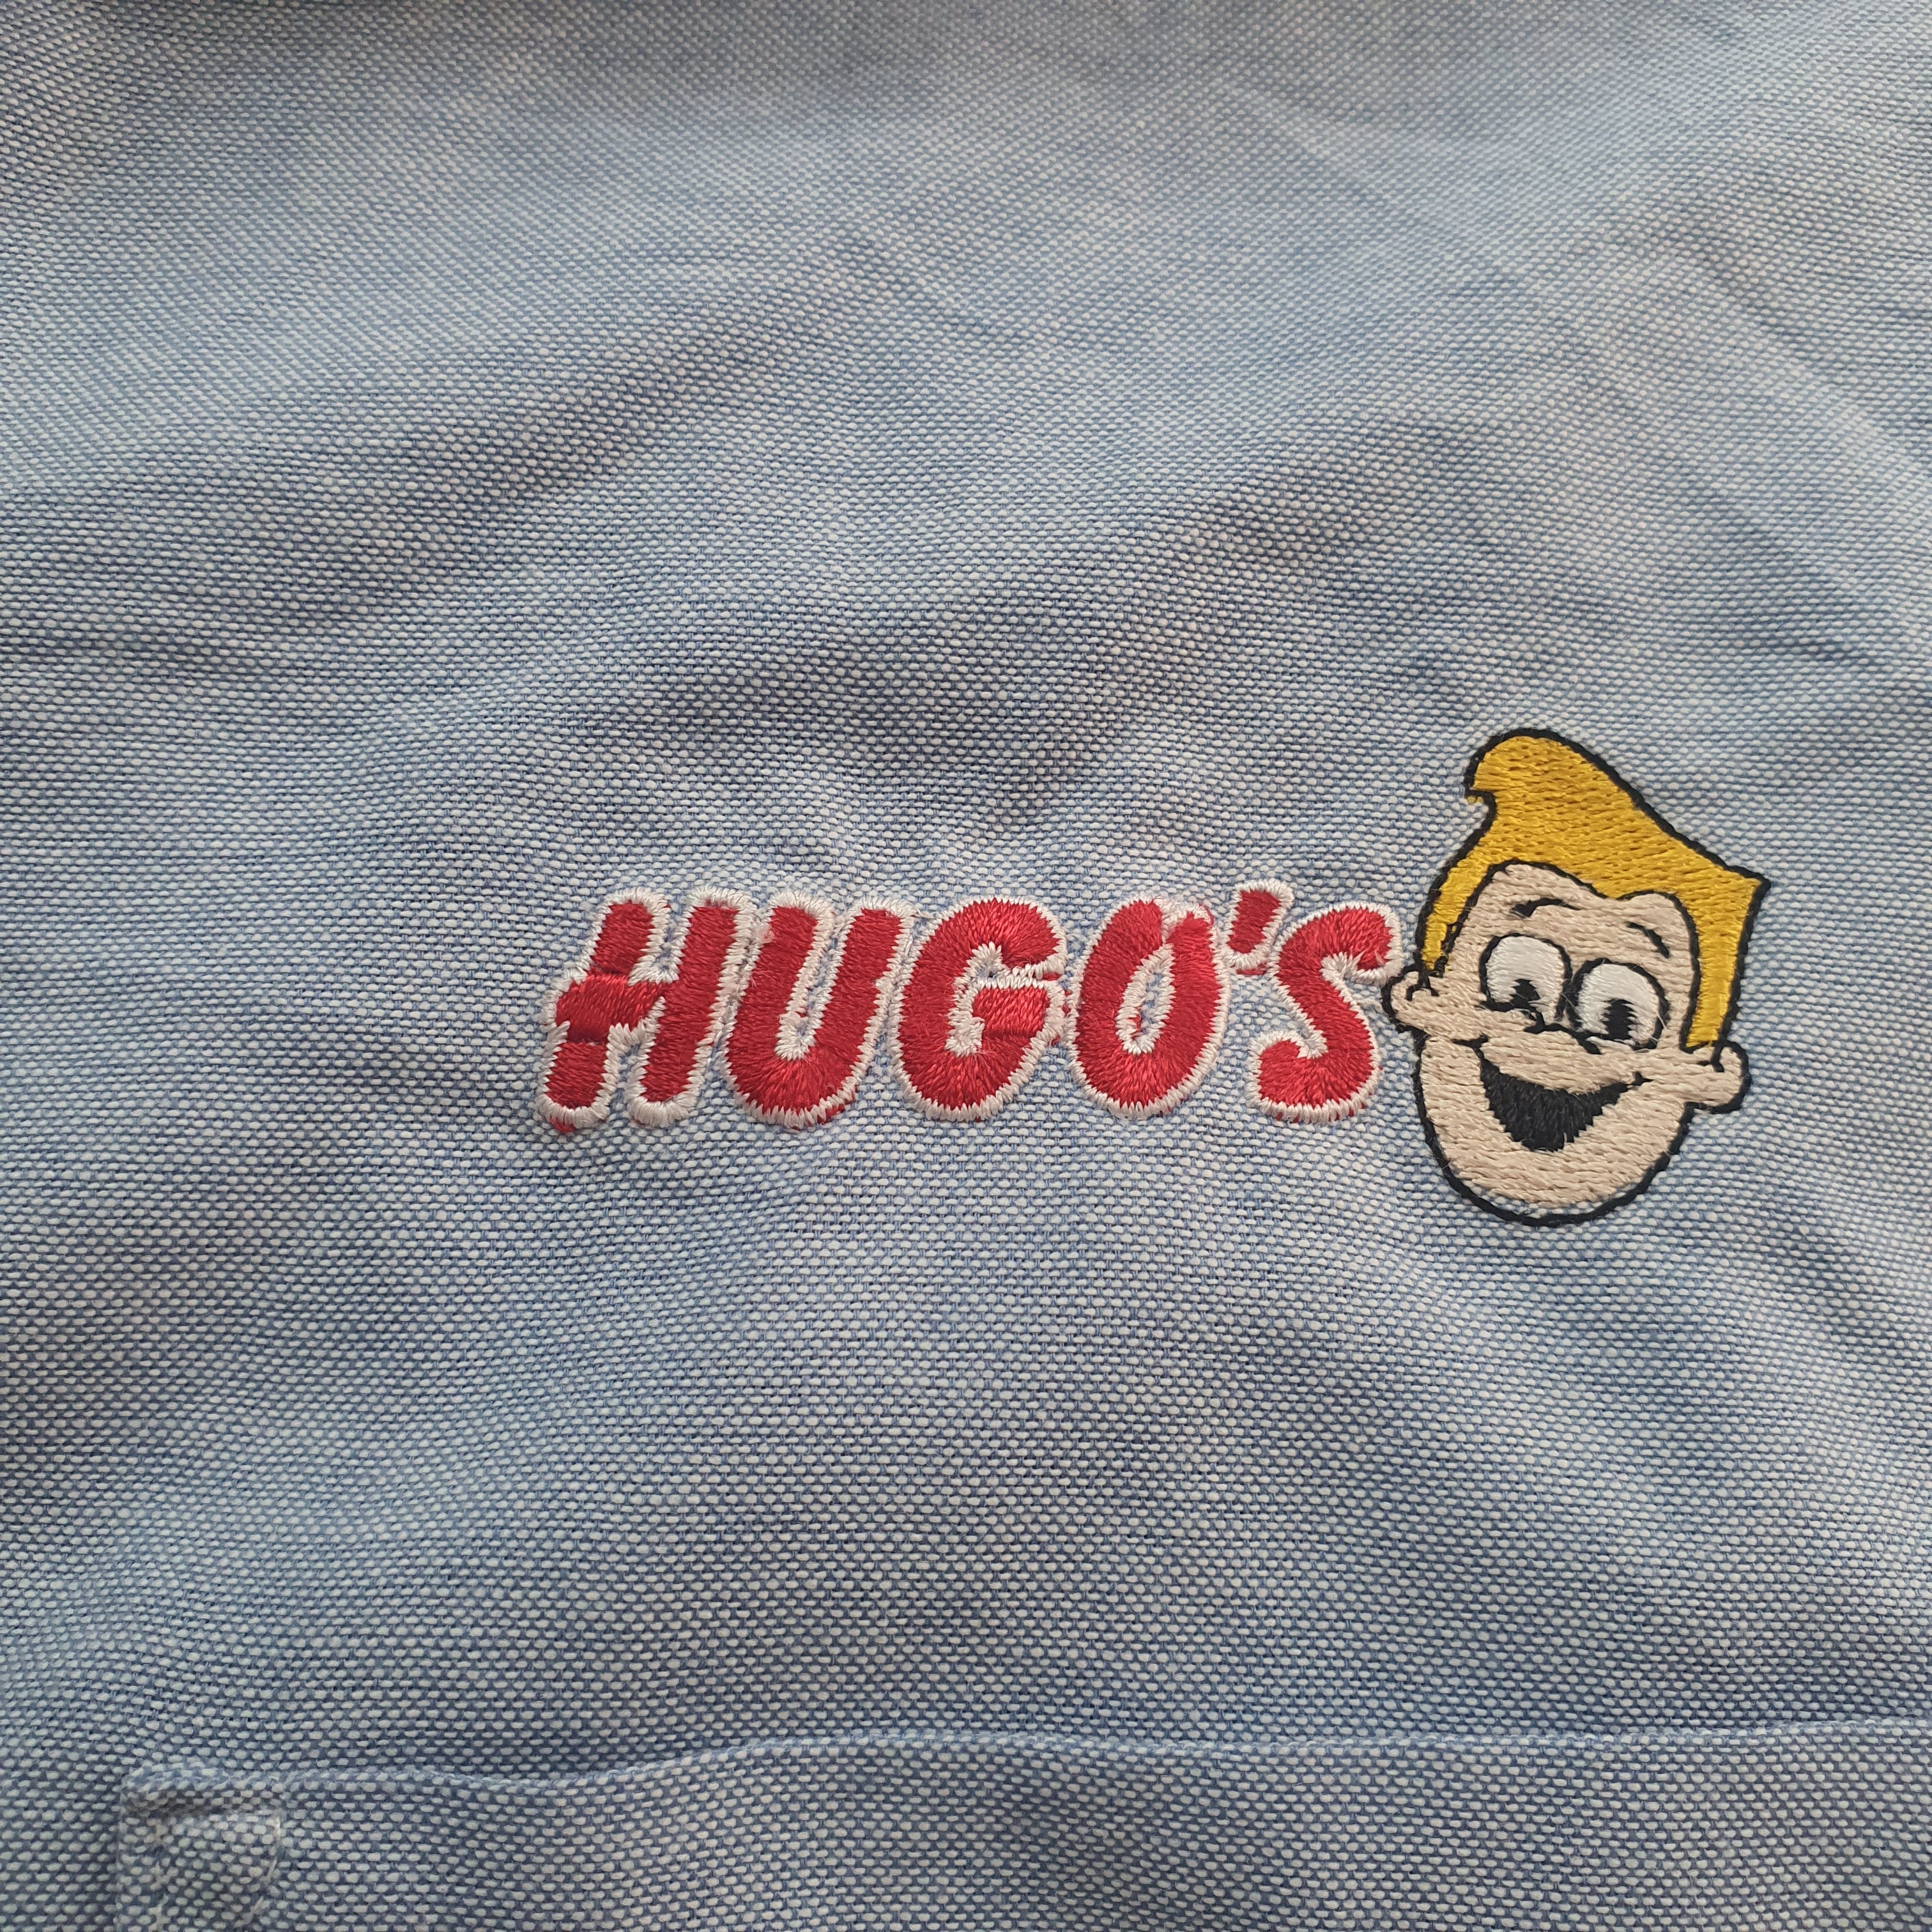 [L] Dickies Hugo's Shirt